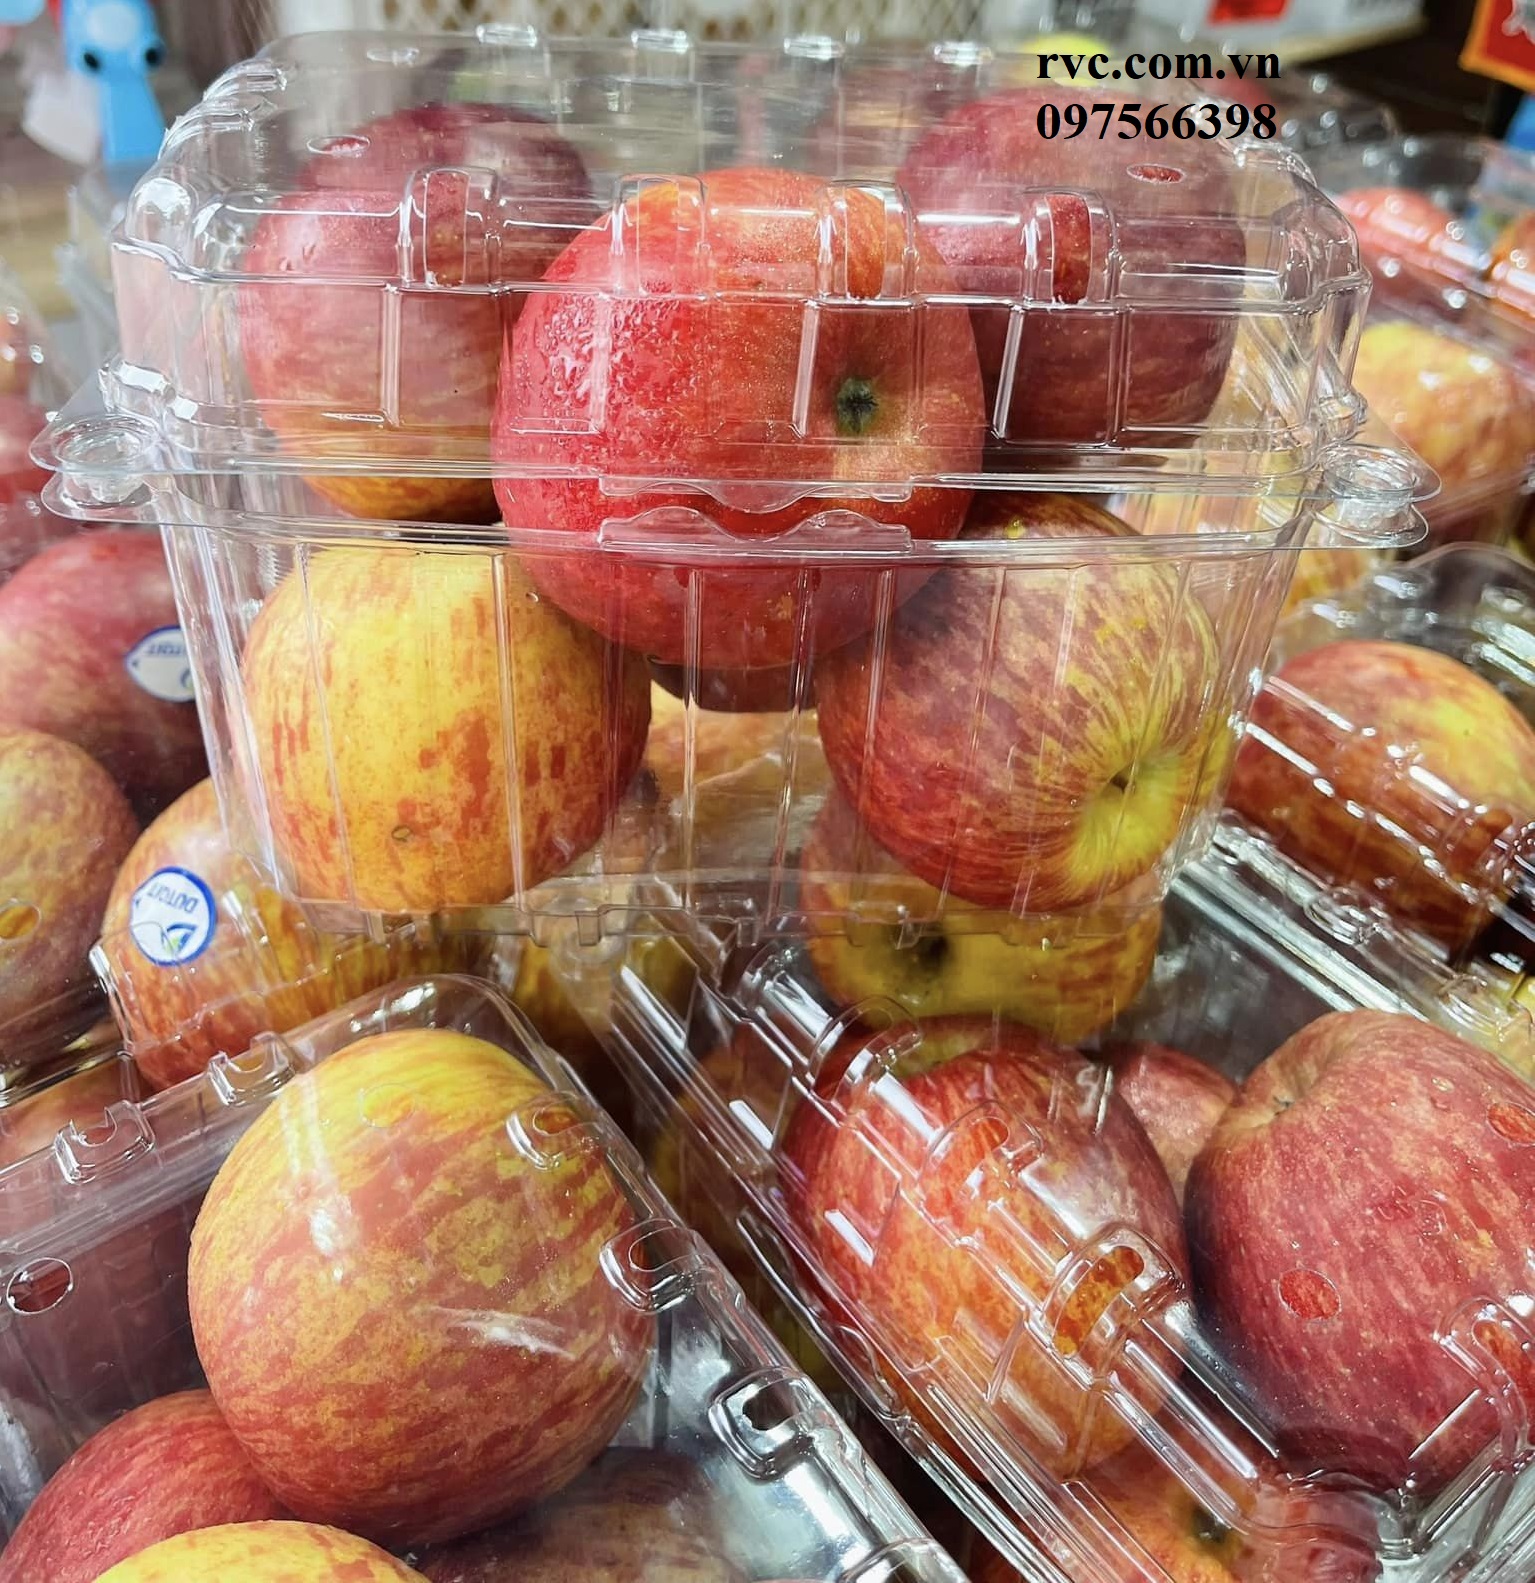 Hộp nhựa trái cây P1000B  chính hãng rẻ nhất toàn quốc.